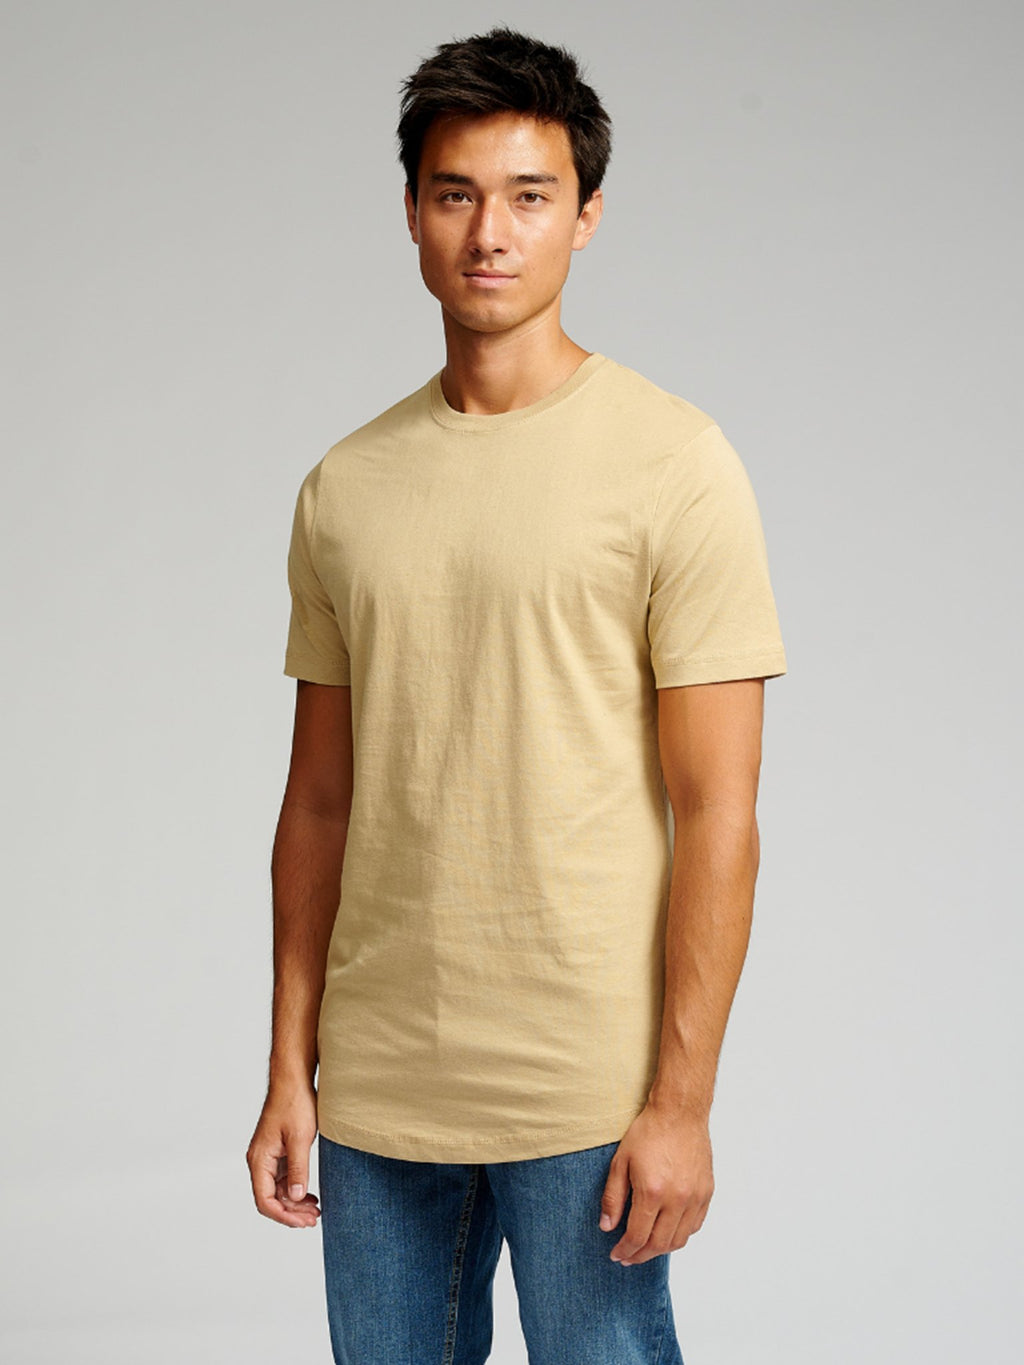 T -shirt lunga - beige